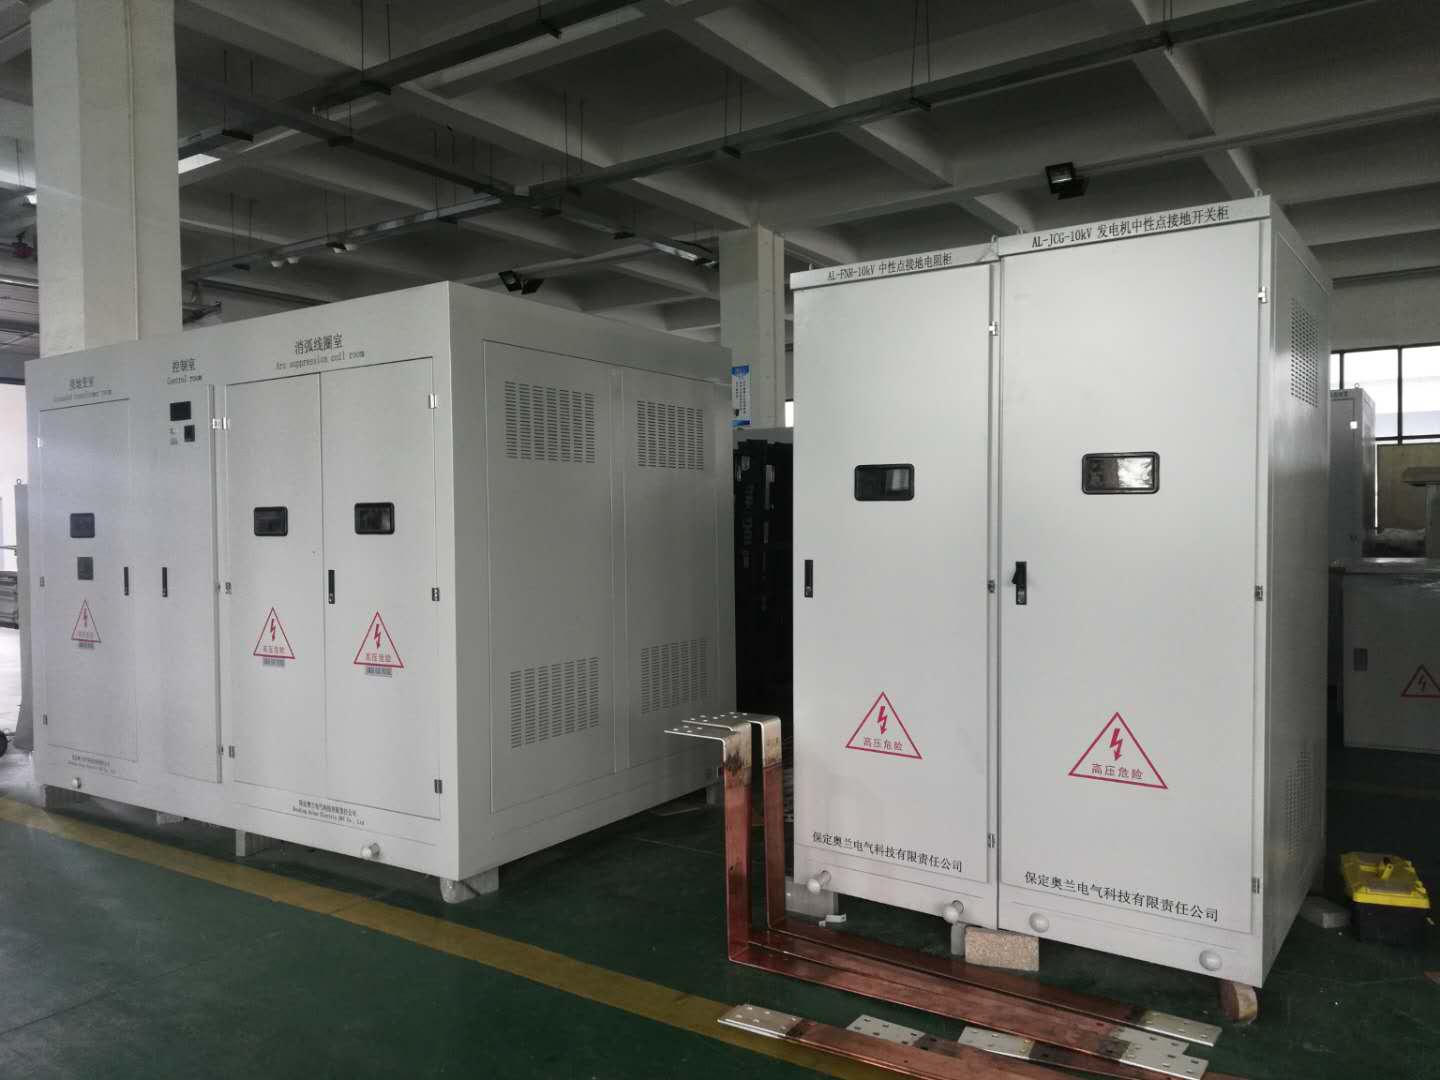 广州白云区AB1006083地块西南中国联通项目电阻柜验收发货